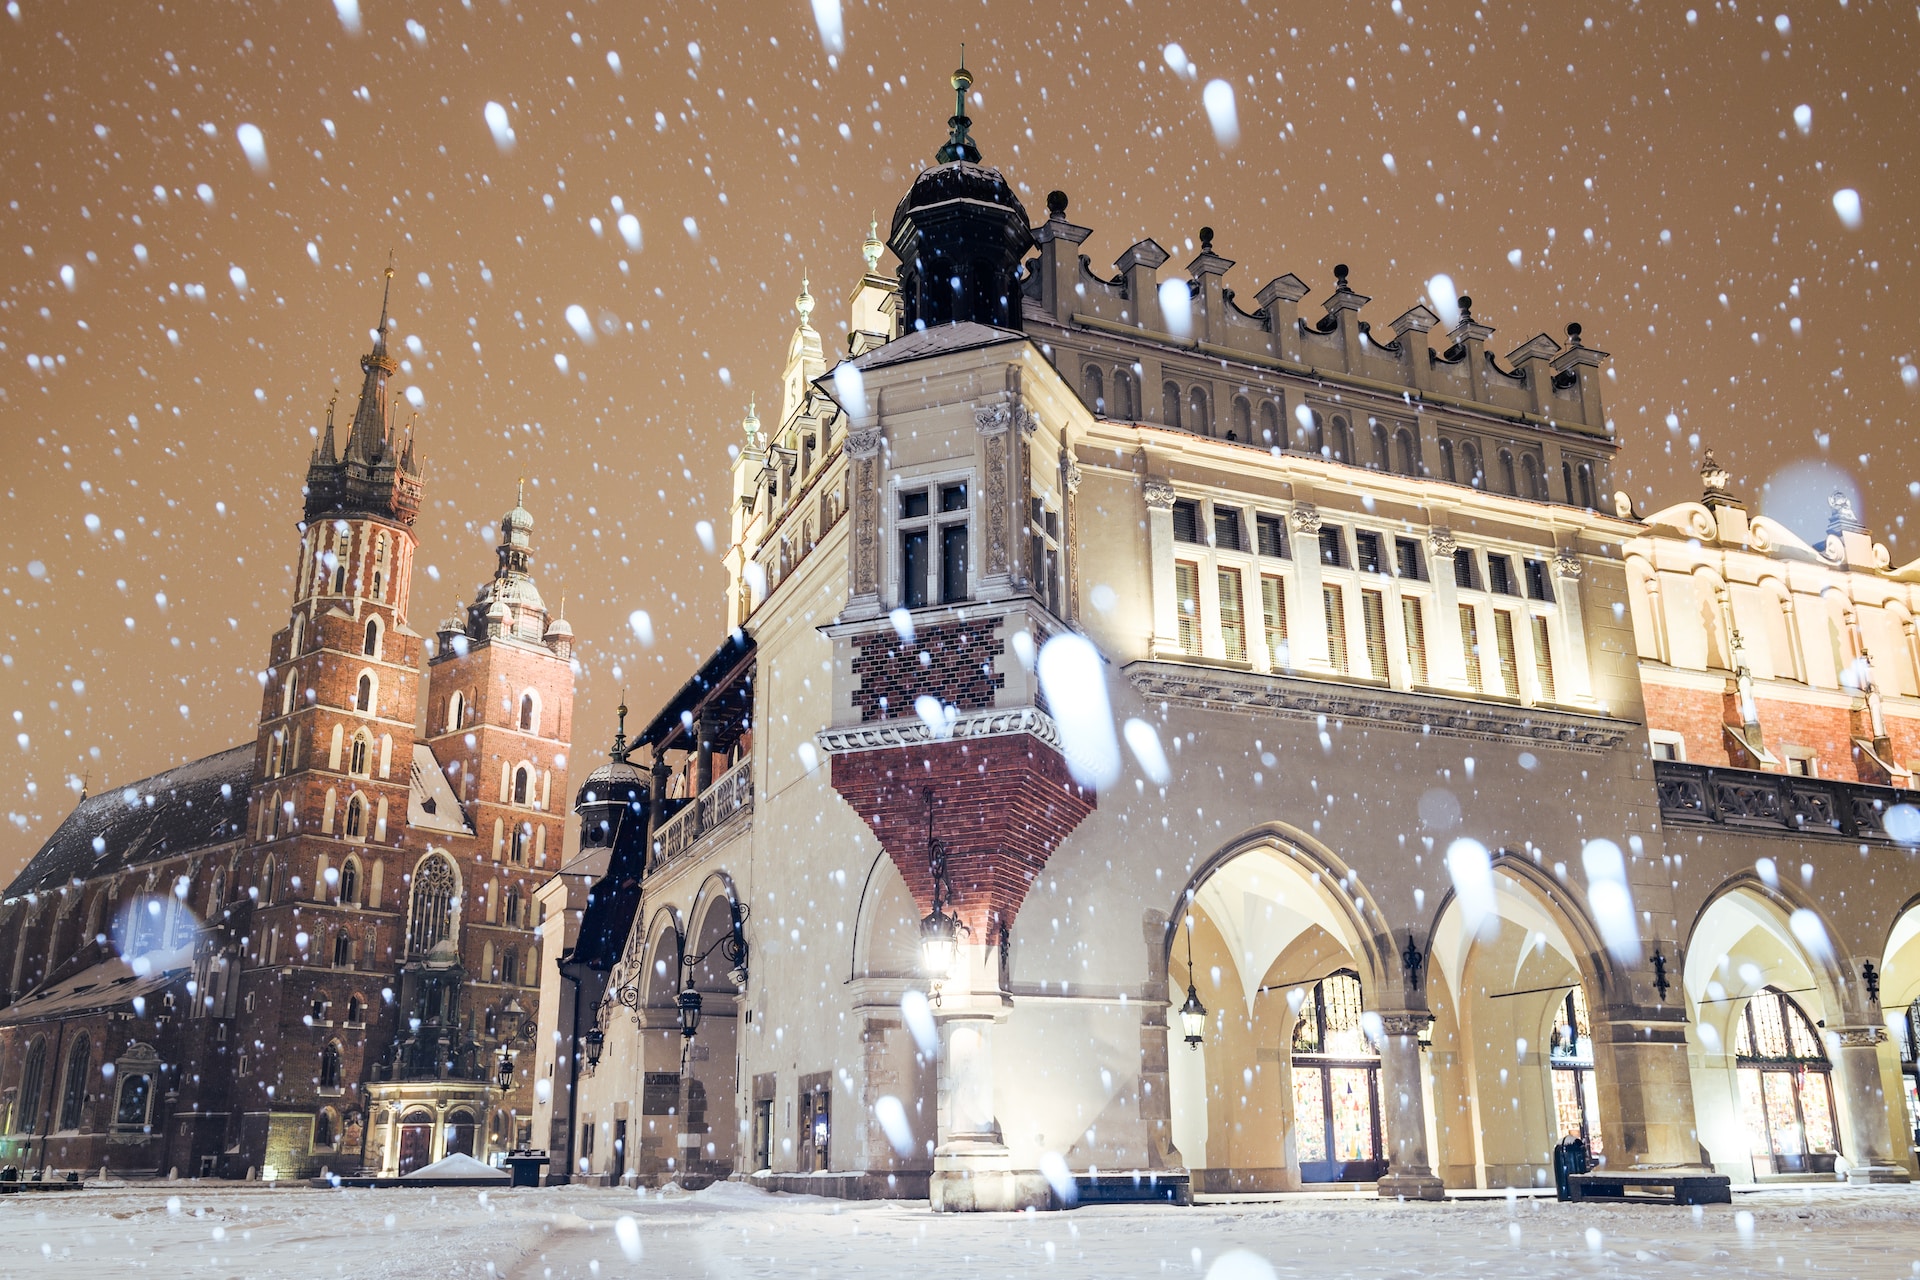 Krakow in winter